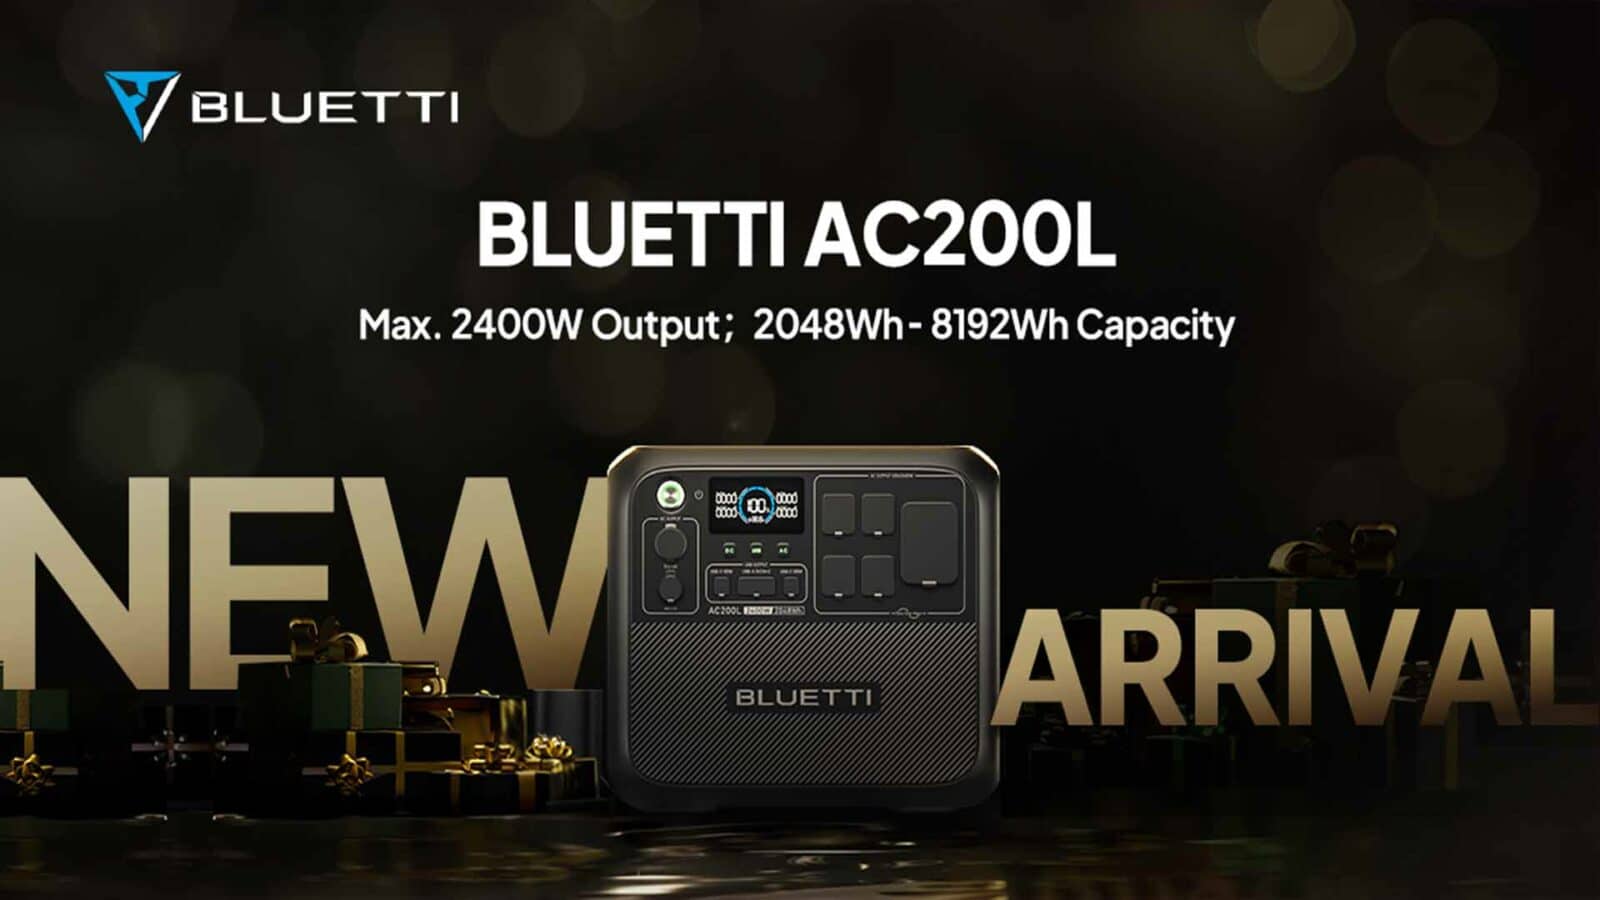 Ein neues Modell des Bluetti AC200L mit einer maximalen Leistung von 2400 W und einer Kapazität von 8192 Wh ist eingetroffen.